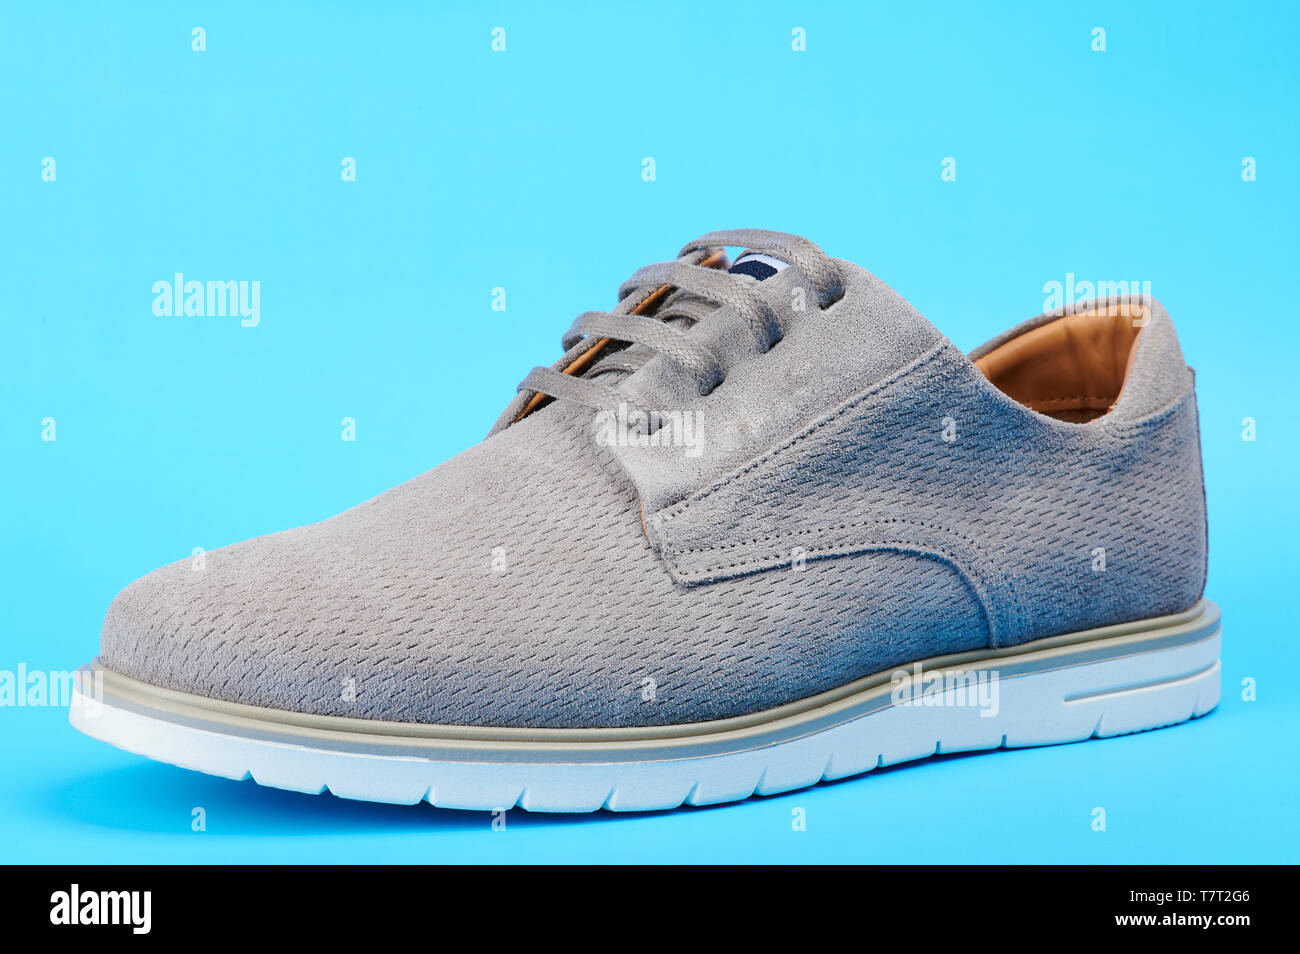 Elegante zwanglose Herren Schuh Seitenansicht auf blauem Hintergrund isoliert Stockfoto